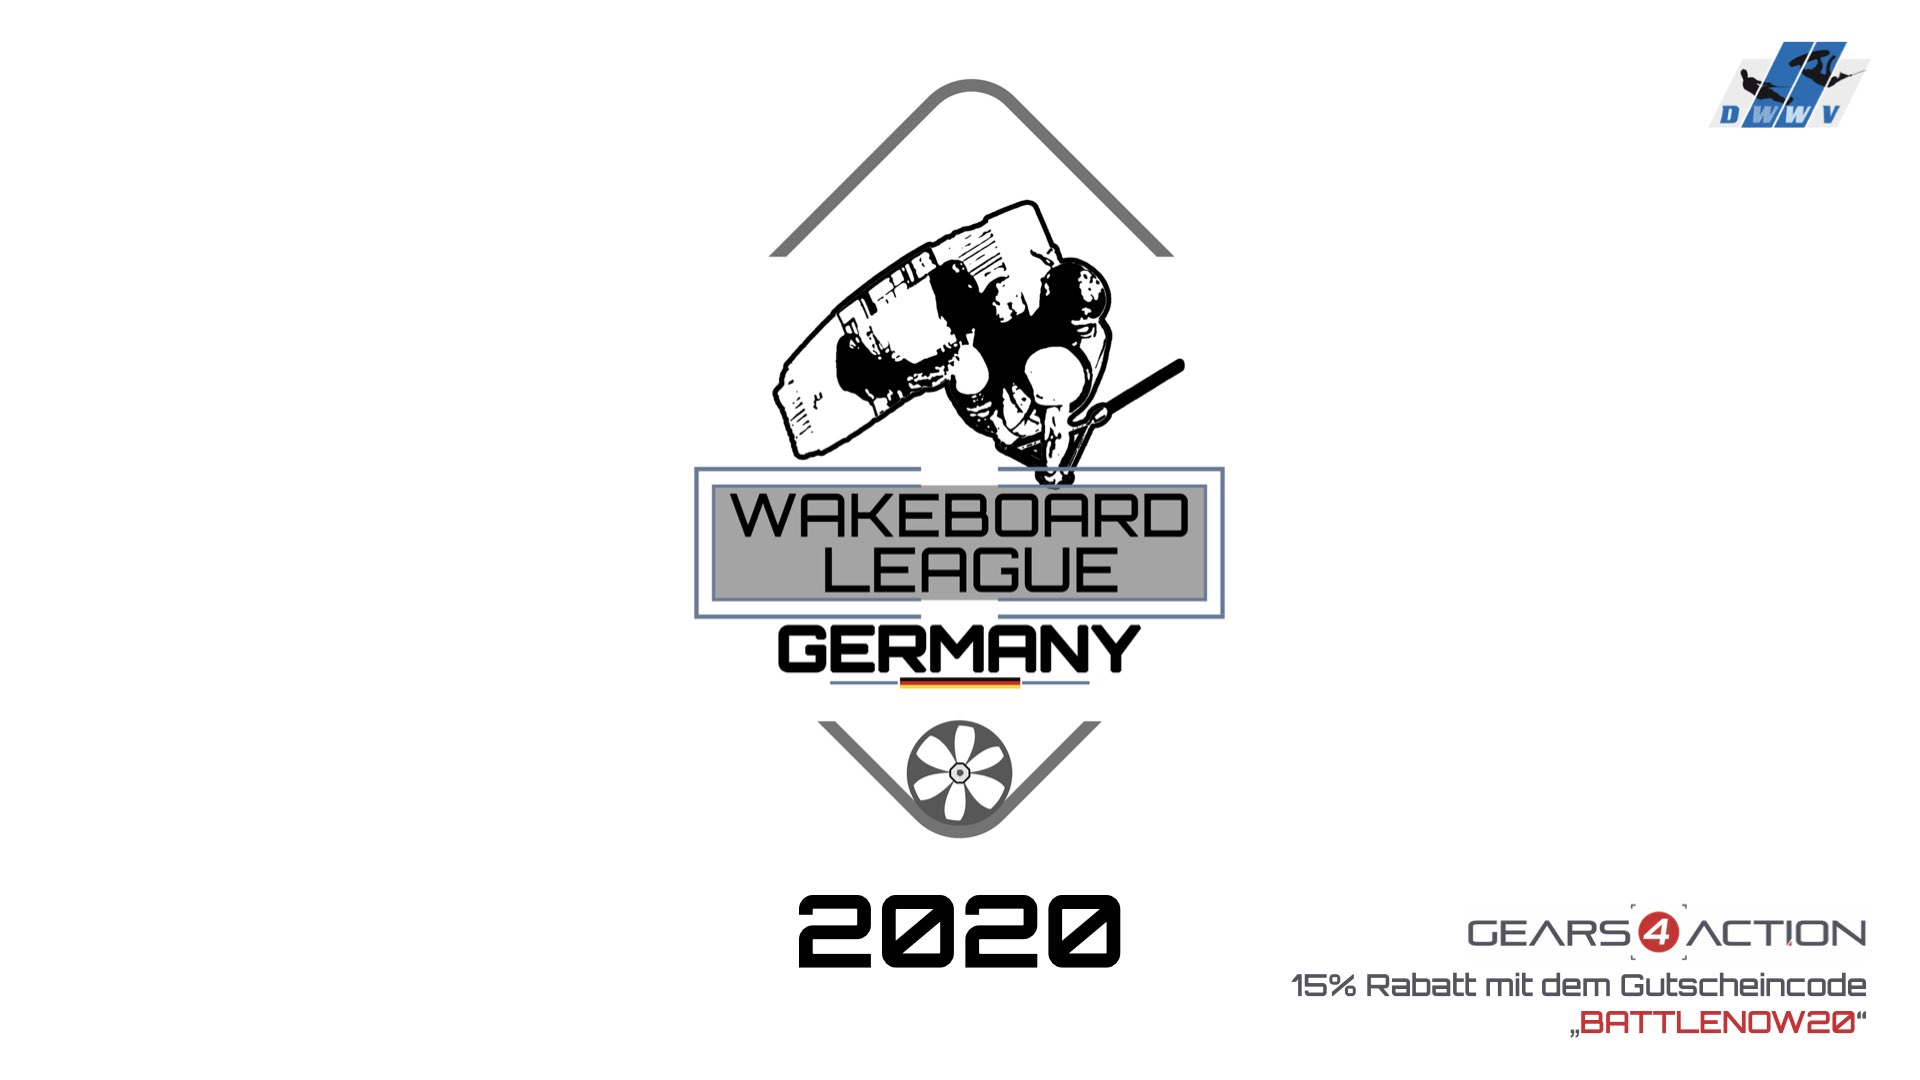 DWWV Wakeboard League Germany - Battle 8 - Best Grab